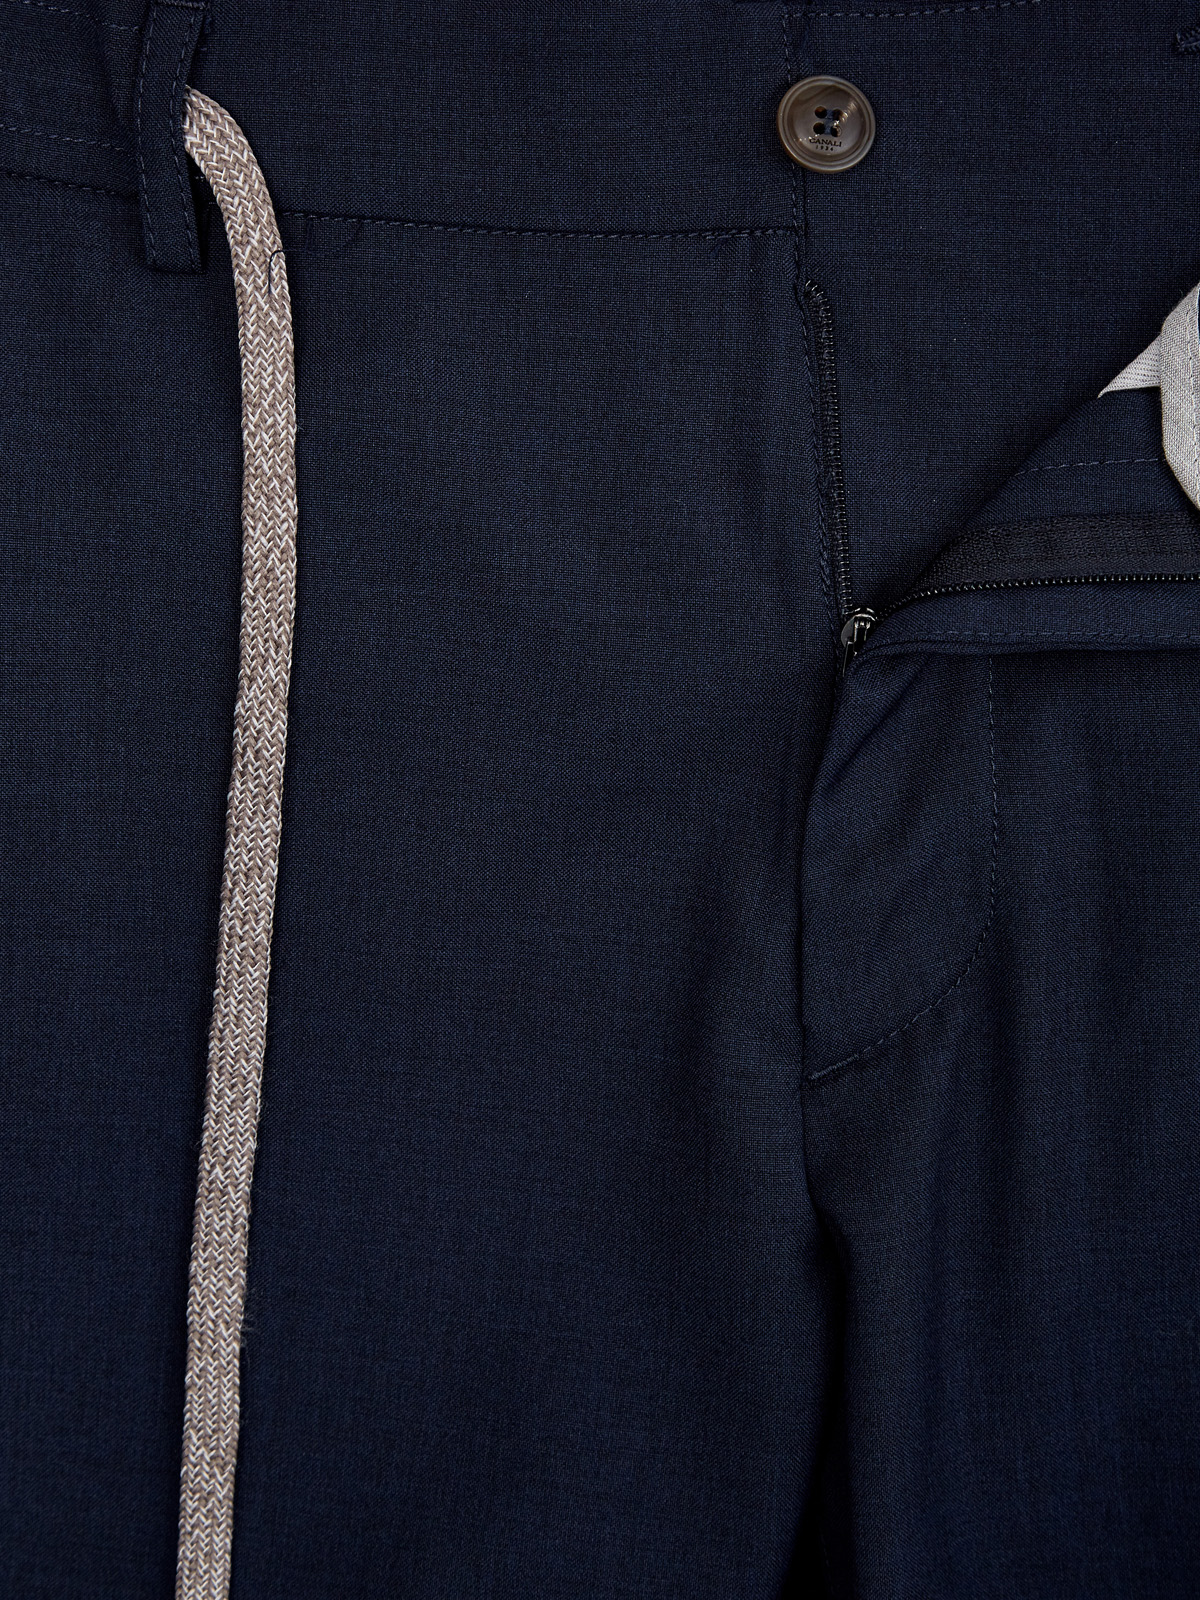 Брюки в стиле sprezzatura из тонкой шерстяной ткани CANALI, цвет синий, размер 56;58 - фото 7